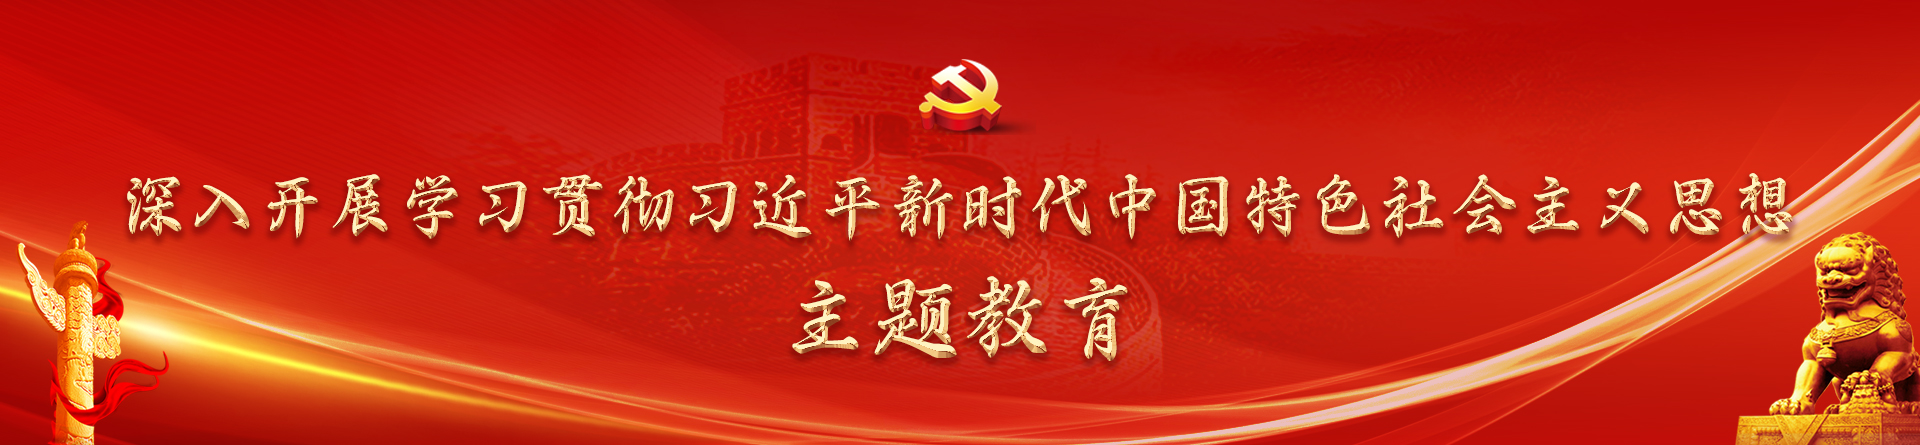 深入开展学习贯彻习近平新时代中国特色社会主义思想主题教育